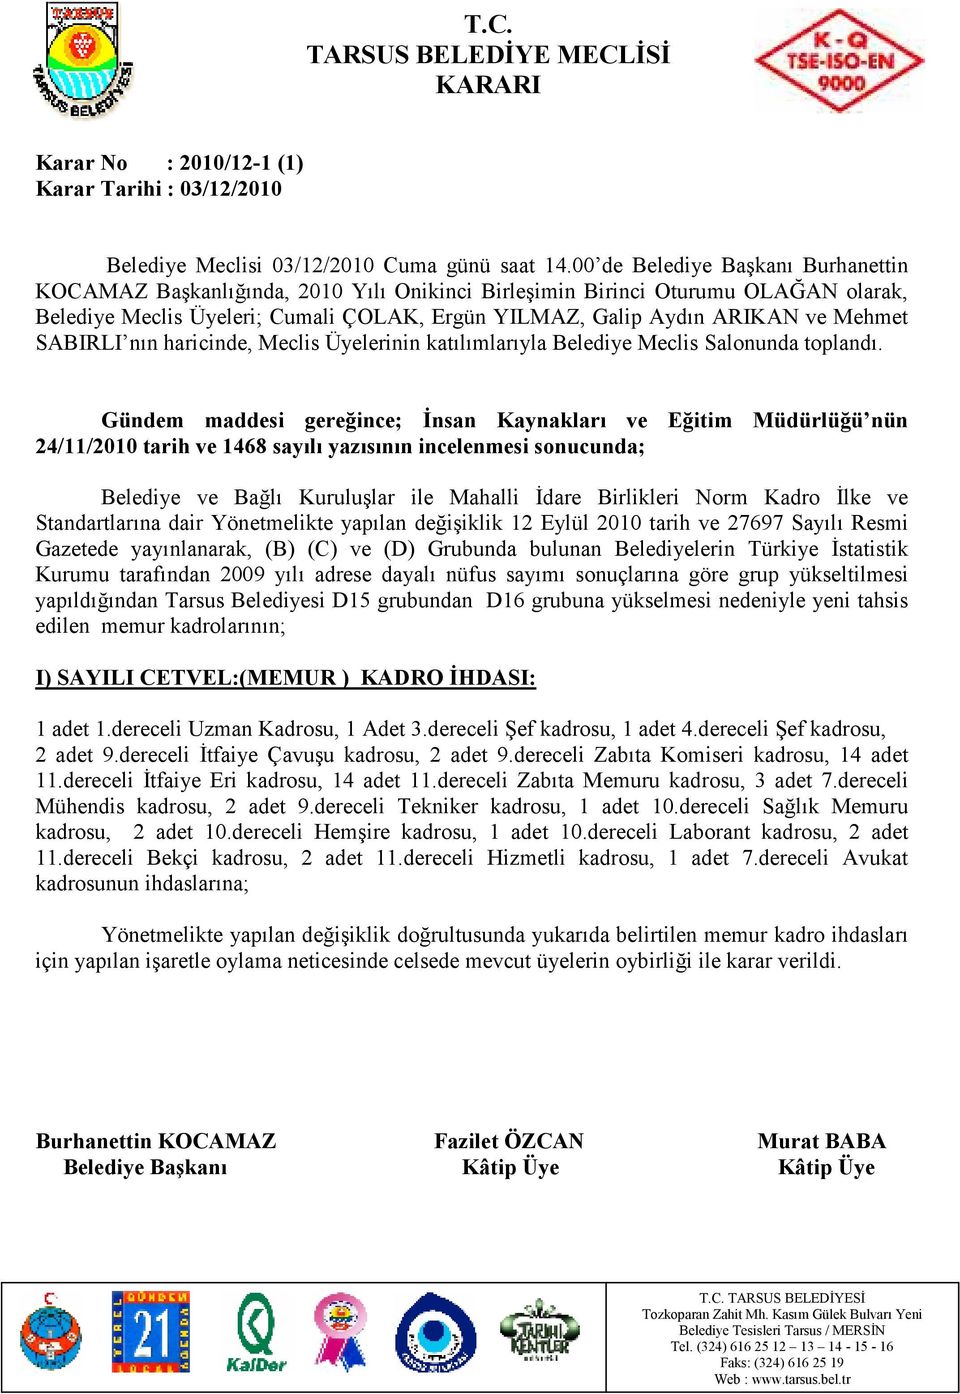 Türkiye Đstatistik Kurumu tarafından 2009 yılı adrese dayalı nüfus sayımı sonuçlarına göre grup yükseltilmesi yapıldığından Tarsus Belediyesi D15 grubundan D16 grubuna yükselmesi nedeniyle yeni